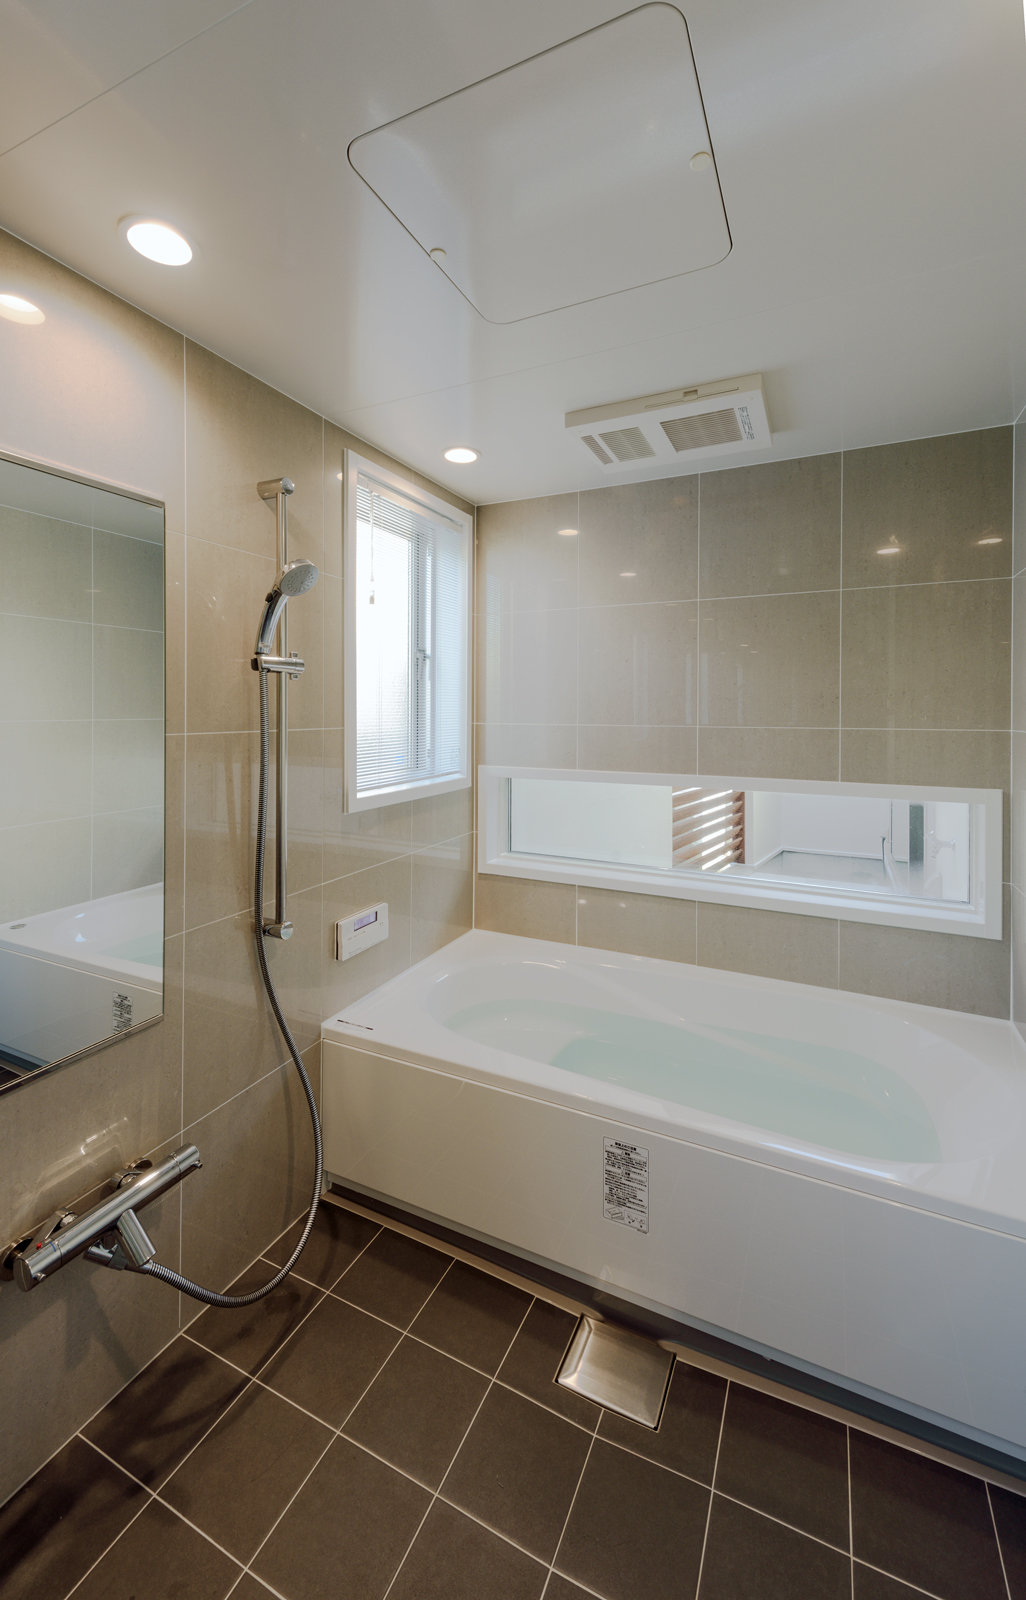 壁と床がタイル張りの高級感あるバスルーム
床のタイルは洗面スペースと同じタイルを用いており、空間の一体感が感じられます
浴槽の奥にある横長の窓からは、中庭の景色を楽しむことができます